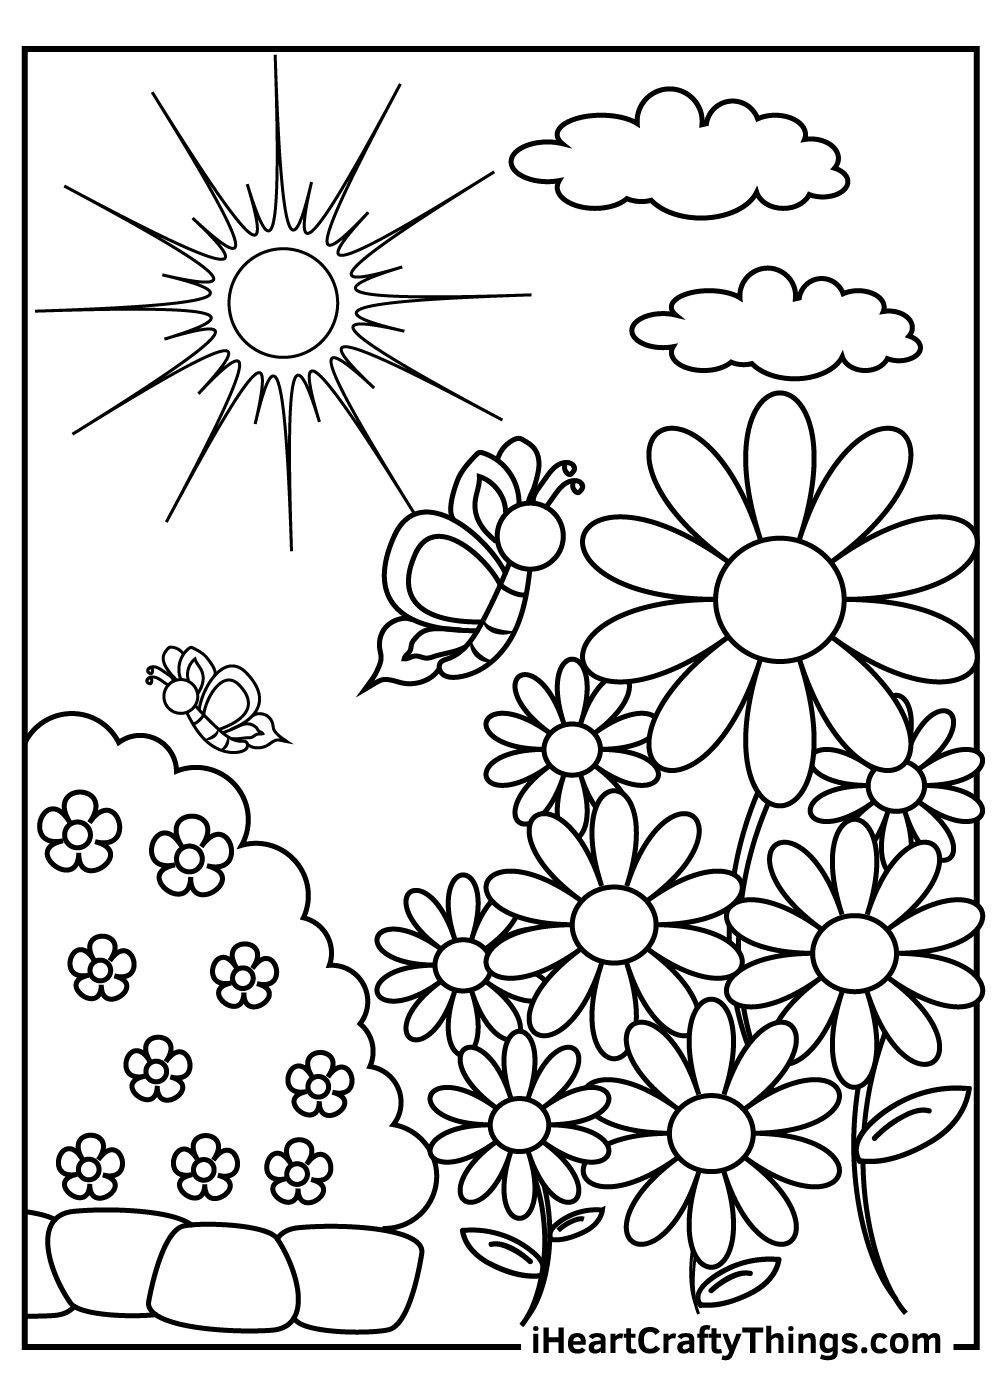 Garden coloring pages garden coloring pages flower coloring pages coloring pages